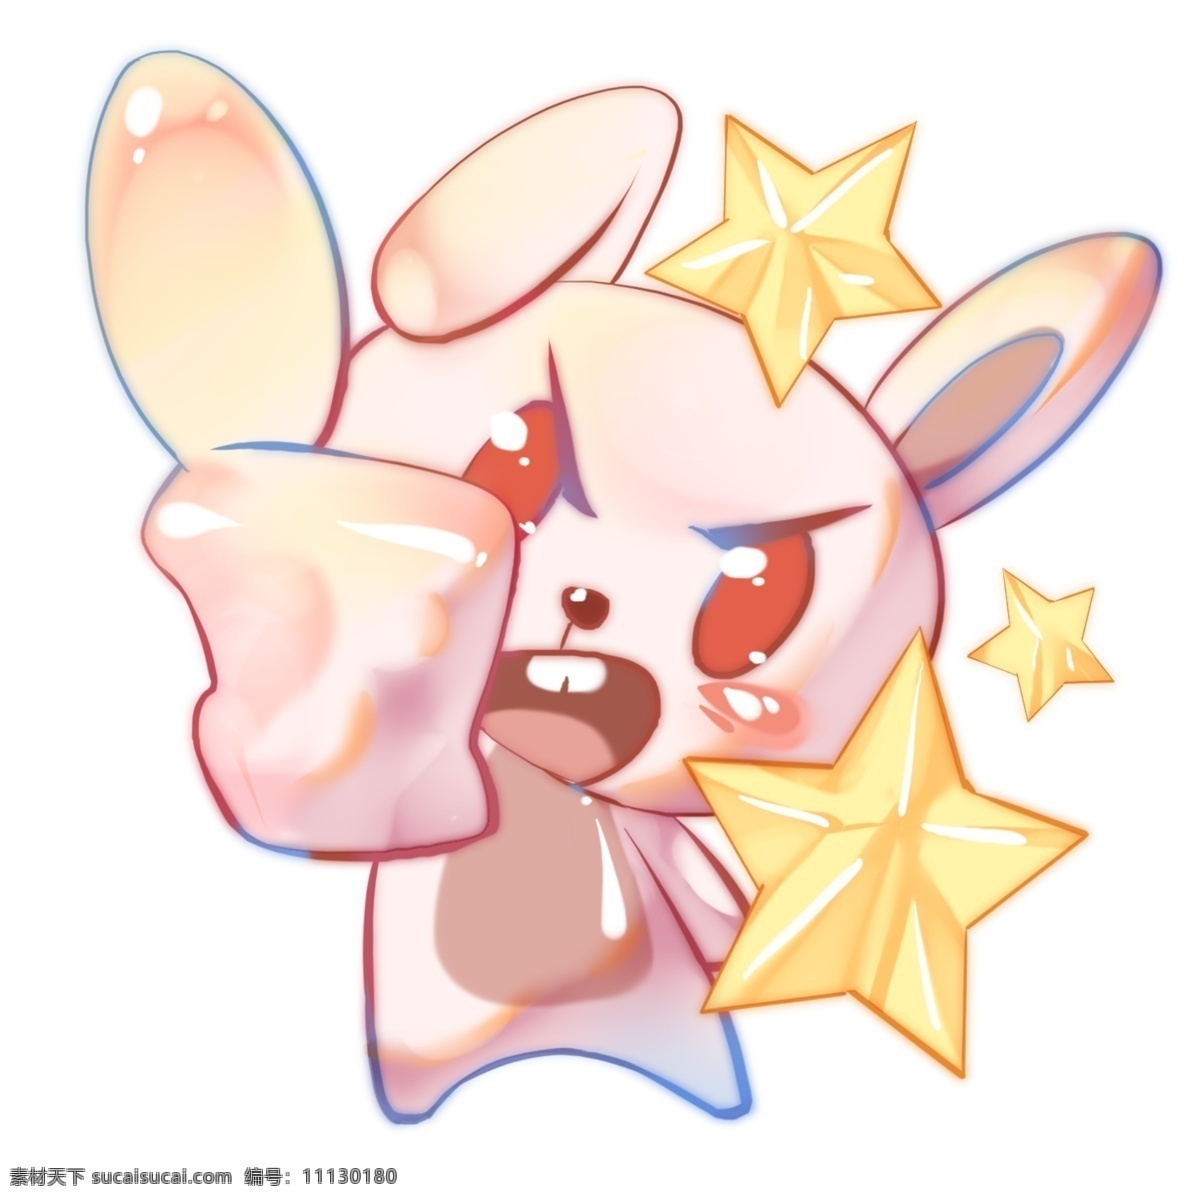 可爱 星星 小 兔 插画 漂亮 手绘星星小兔 萌 发怒 生气的小兔